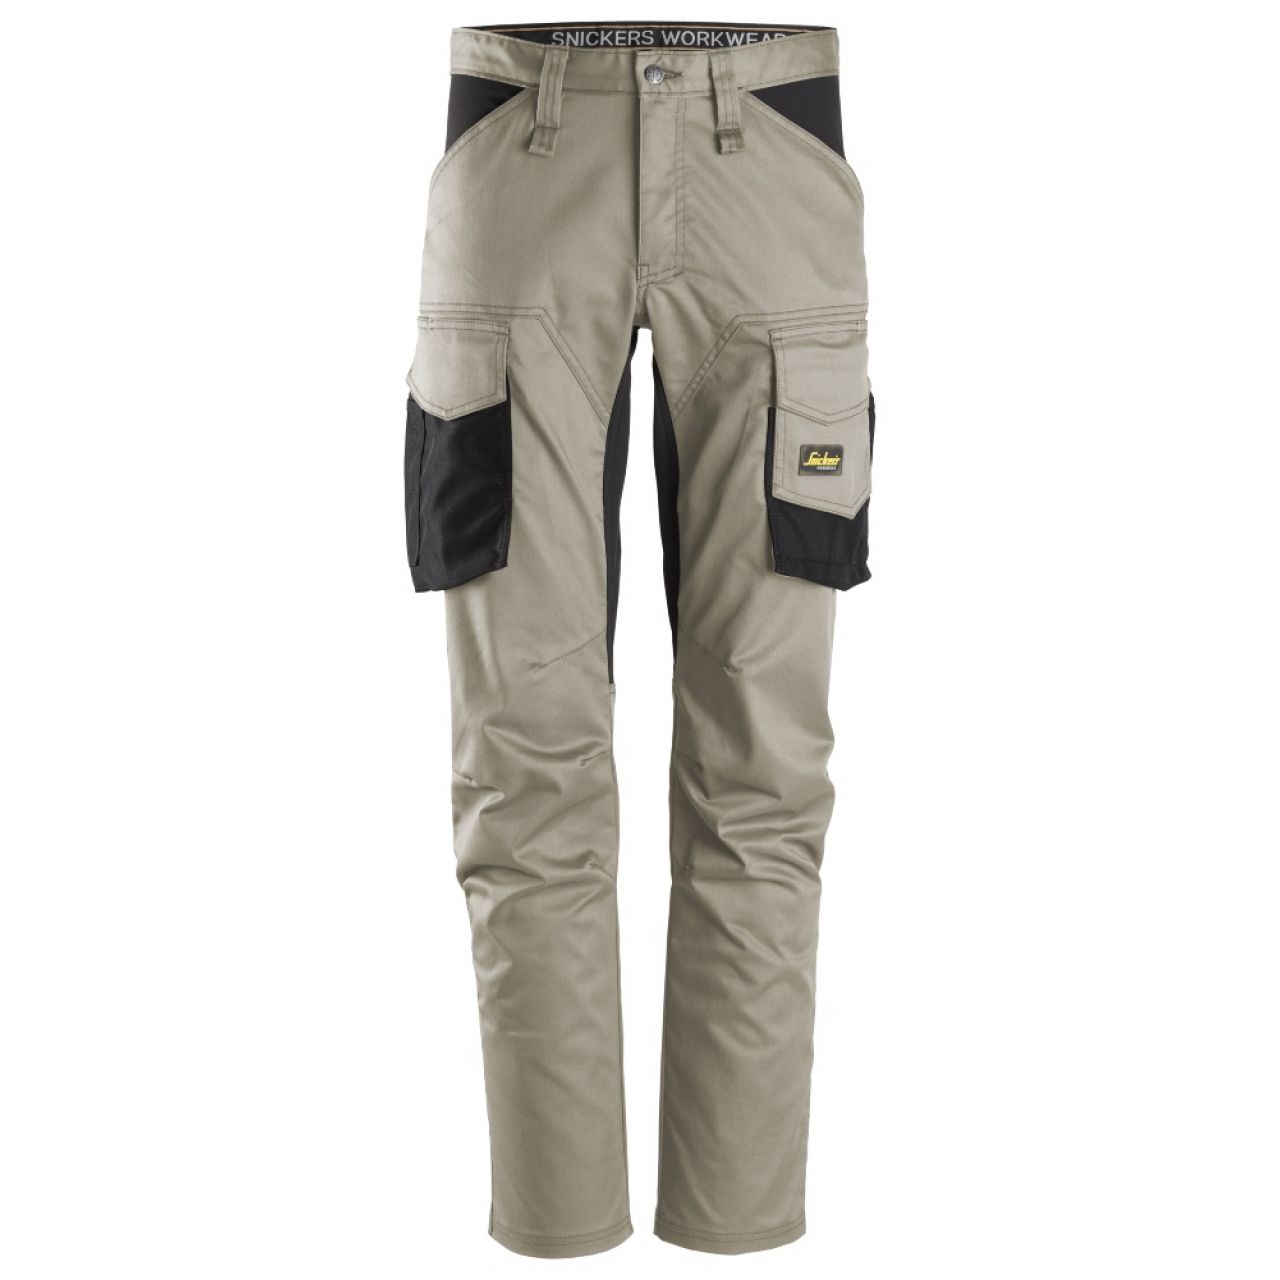 6803 Pantalones largos de trabajo elásticos sin bolsillos para las rodilleras AllroundWork beige-negro talla 208